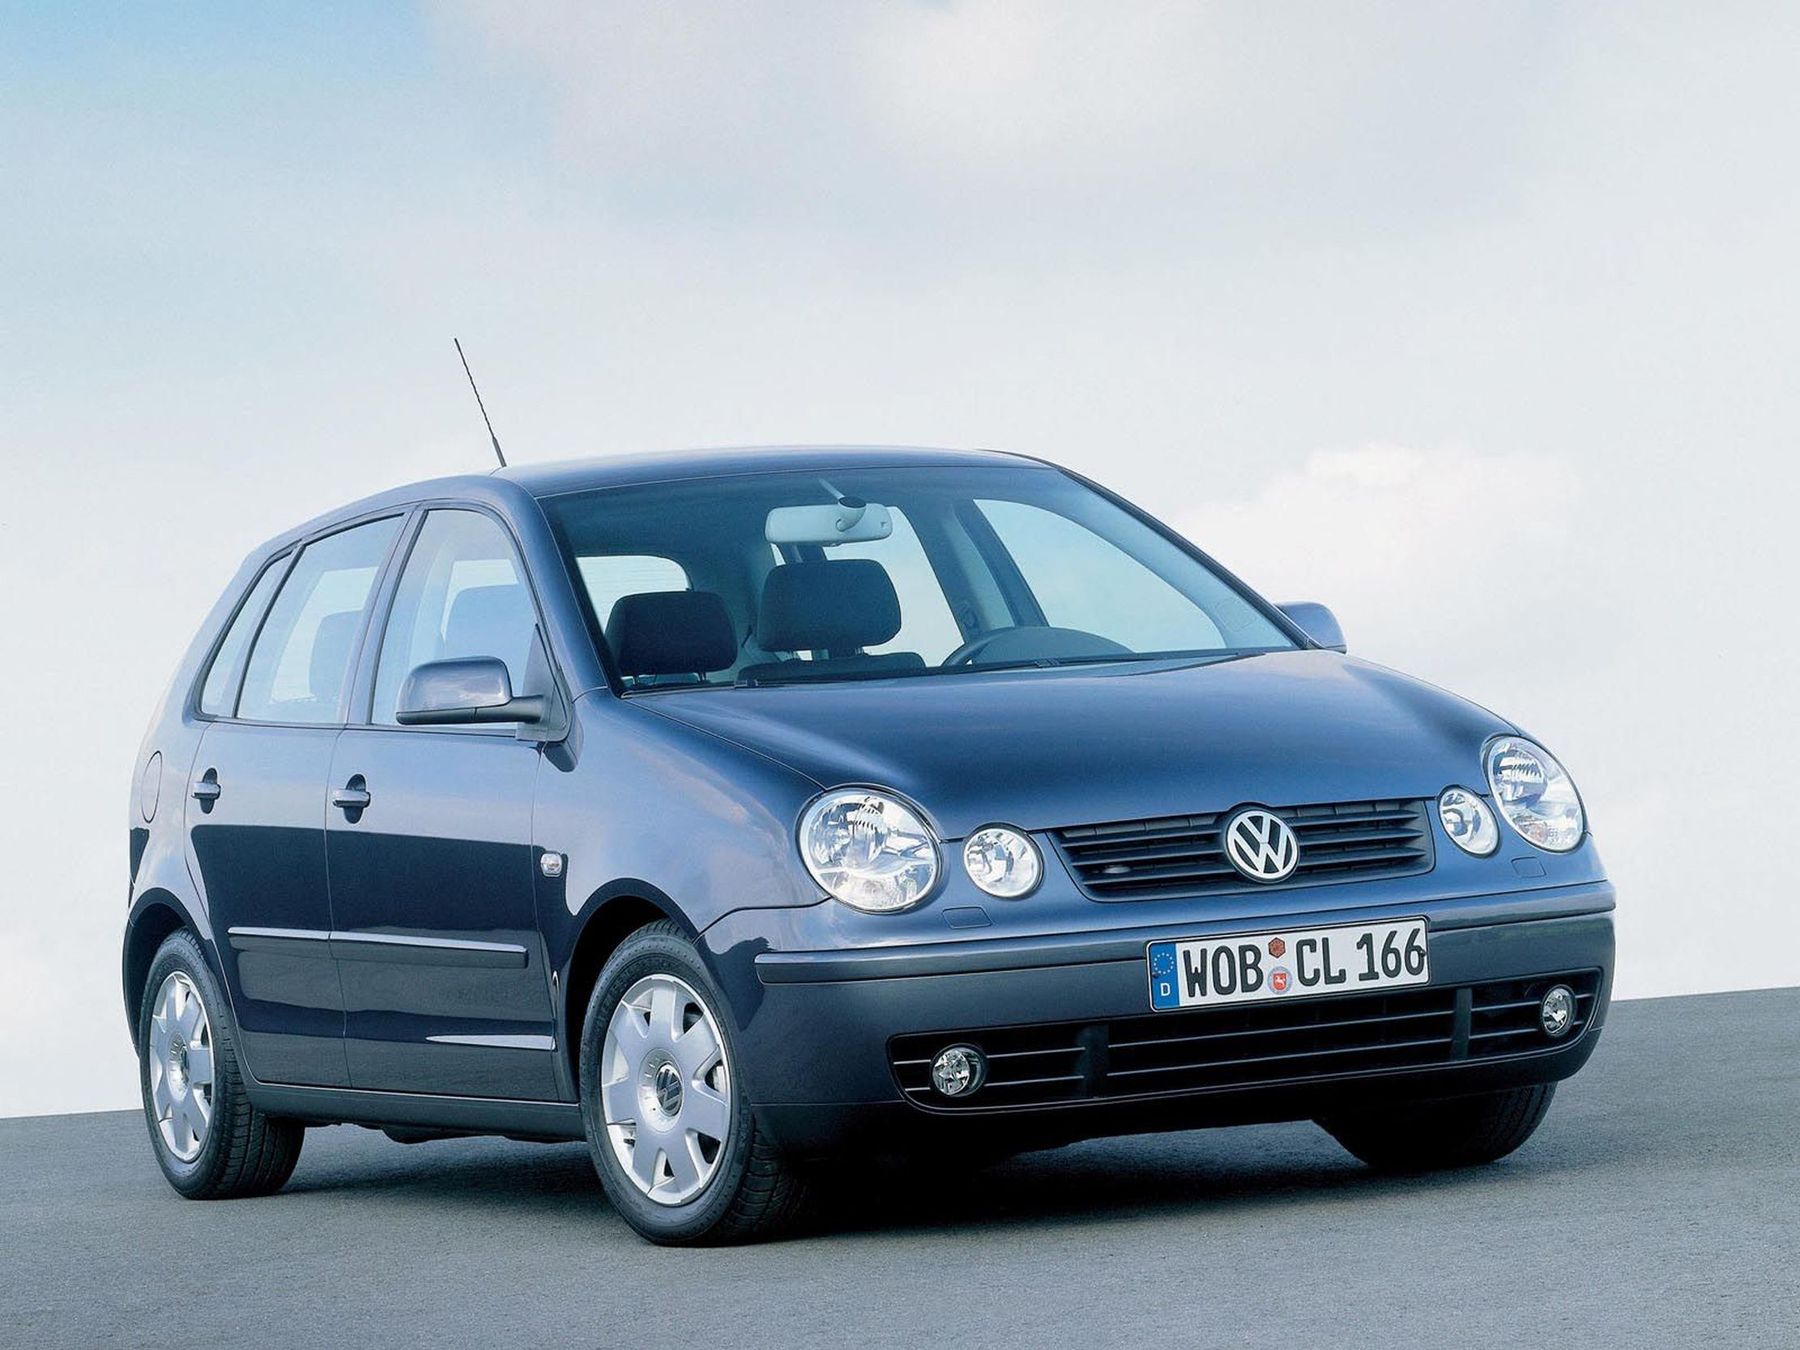 Фольксваген поло 4 хэтчбек. Volkswagen Polo 2002 1.4 хэтчбек. Фольксваген поло 2003 хэтчбек 1.4. WV Polo 2002. Фольксваген поло 1.2 2005.